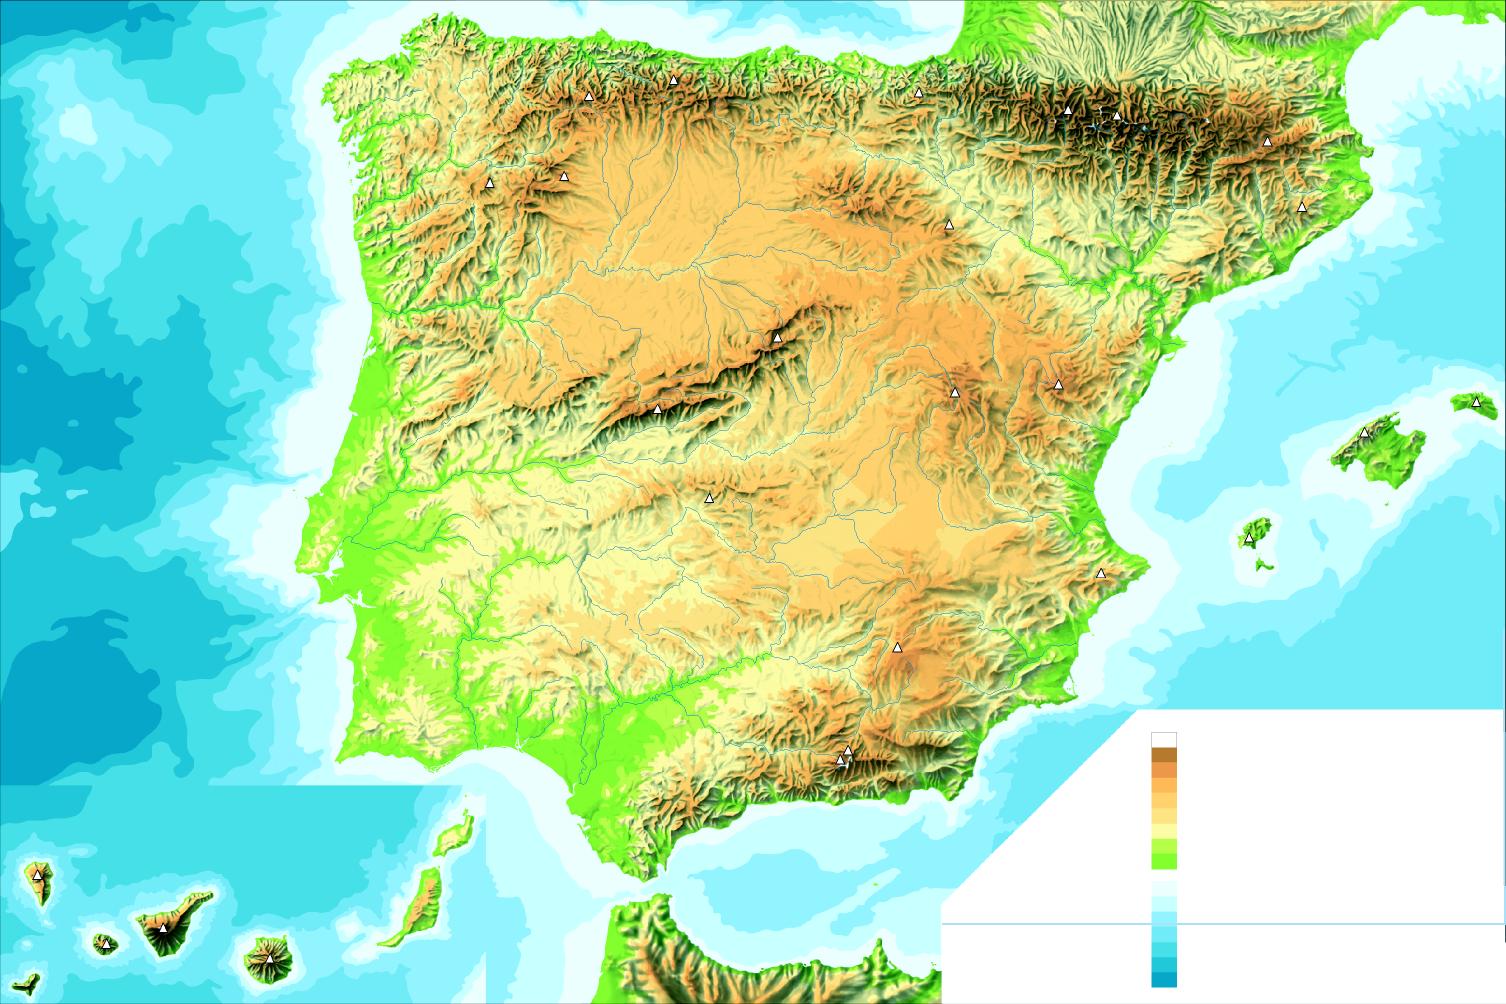 Juegos De Geografía Juego De Cordilleras De España Cerebriti 7107